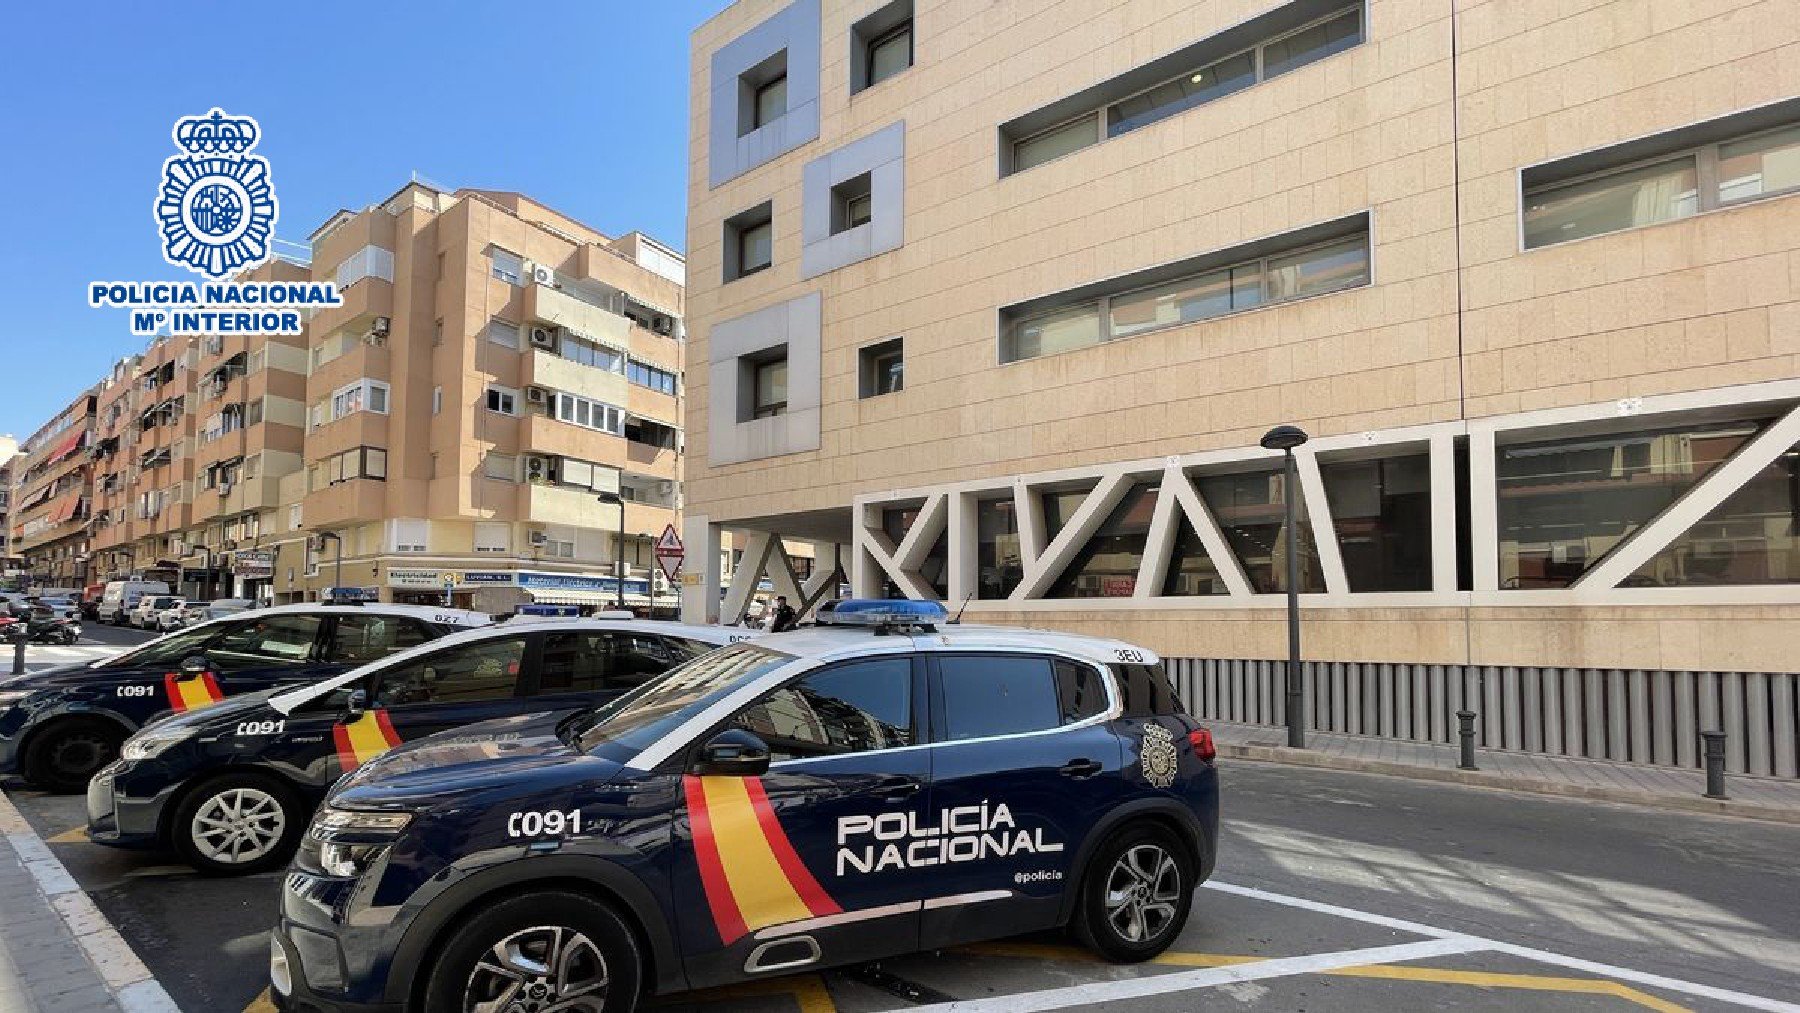 Fachada de las dependencias de la Policía Nacional en Alicante.